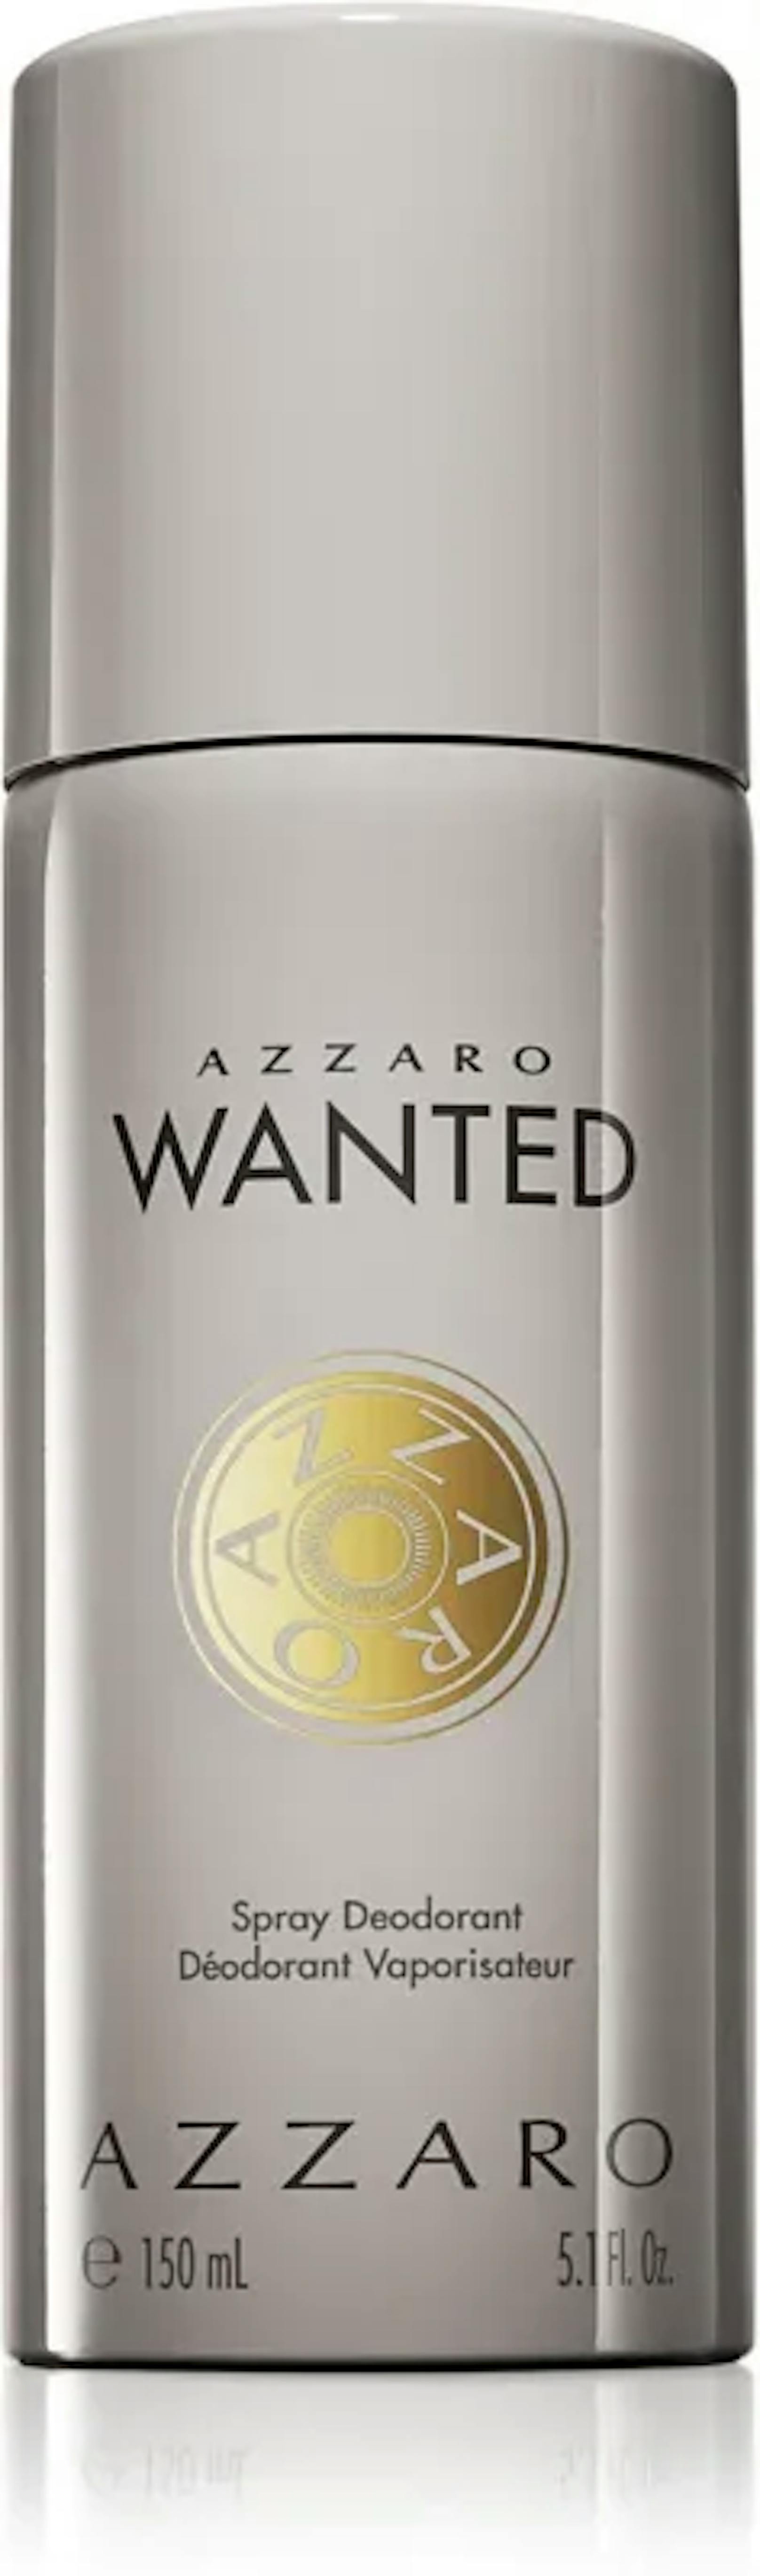 Wer sich von morgens bis abends frisch fühlen möchte sollte zum Deodorant Azzaro Wanted greifen. Das Deo-Spray setzt das selbe Aroma frei wie das Parfum, allerdings hält dieses deinen Schweißgeruch in Grenzen. 